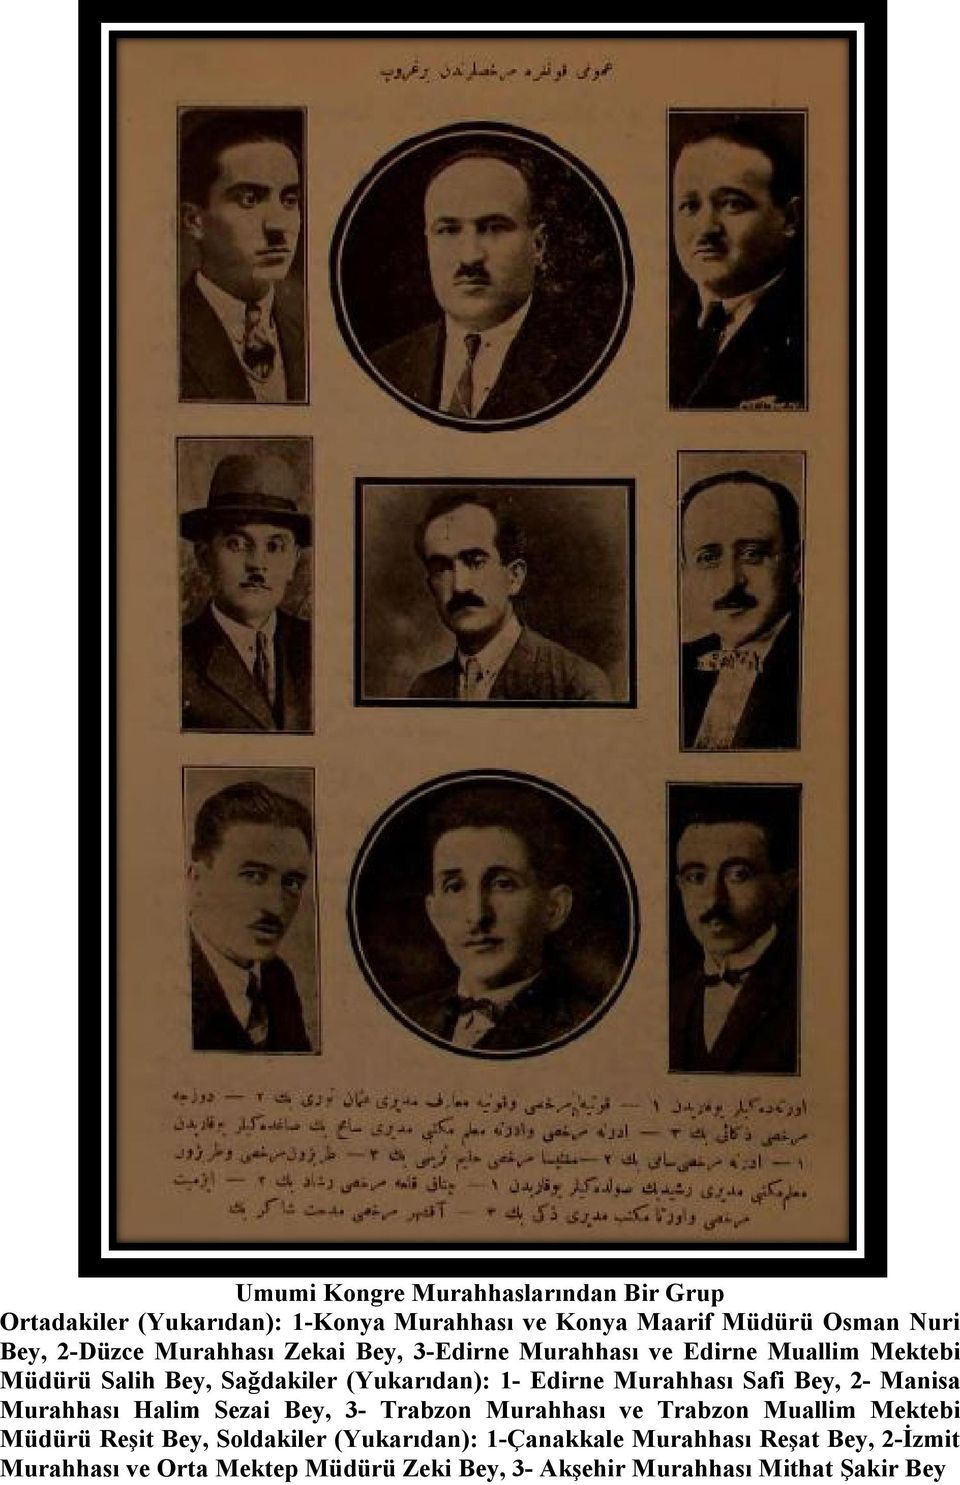 Safi Bey, 2- Manisa Murahhası Halim Sezai Bey, 3- Trabzon Murahhası ve Trabzon Muallim Mektebi Müdürü Reşit Bey, Soldakiler